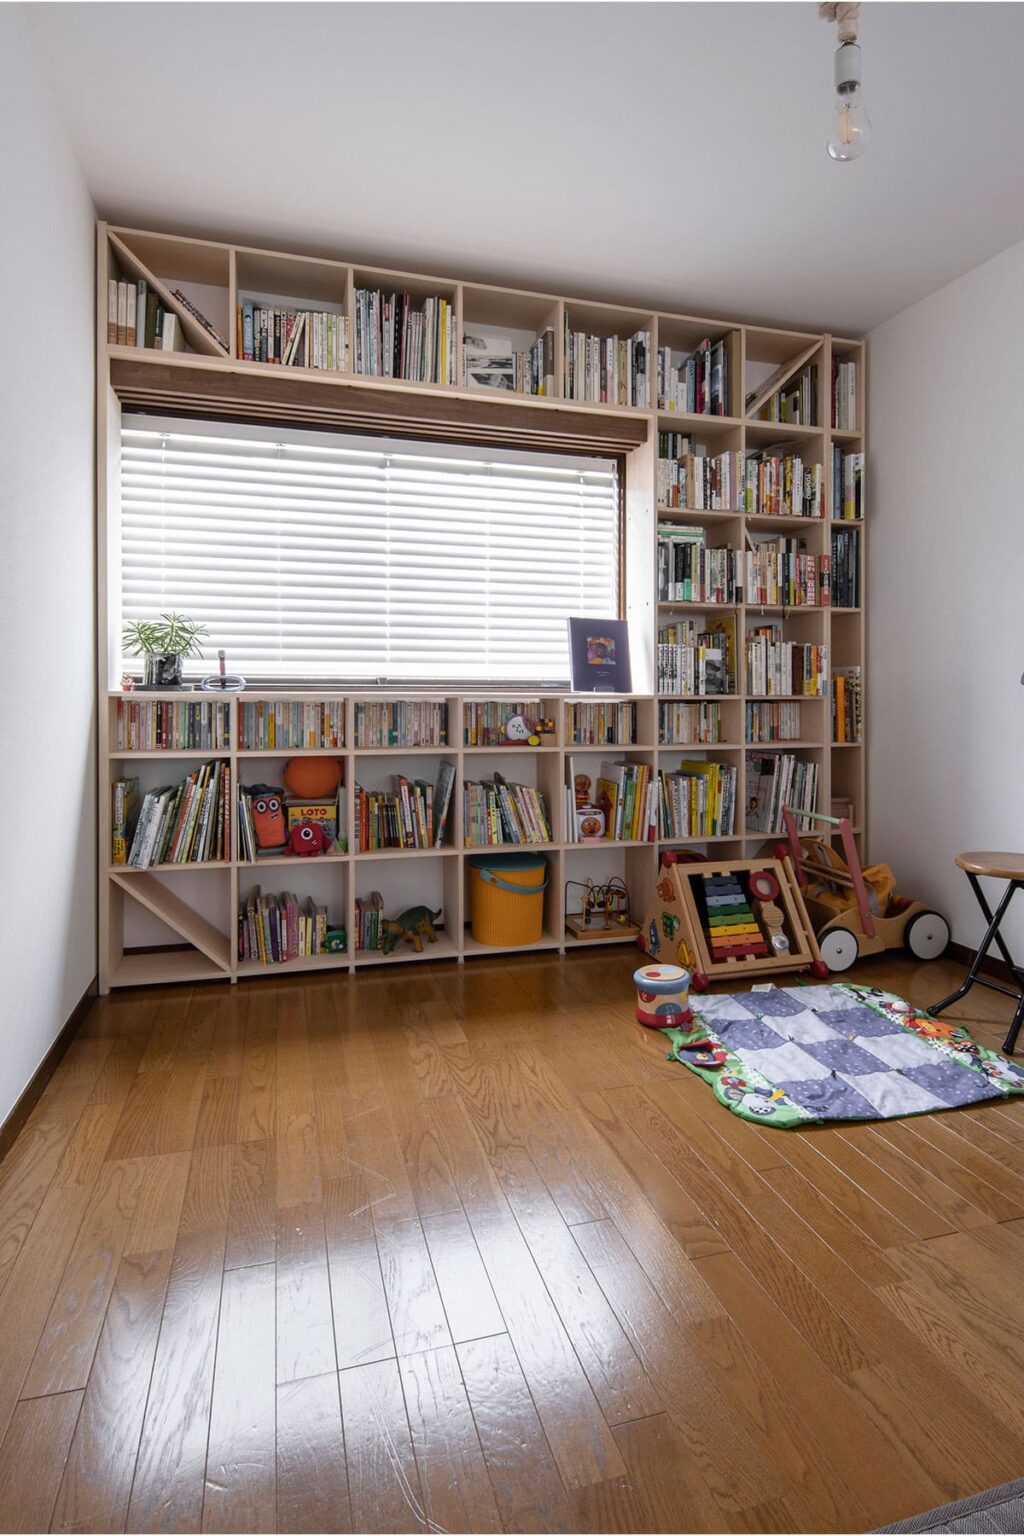 おしゃれな本棚の設置実例③「Shelf 壁一面の本棚 奥行350mm」を設置